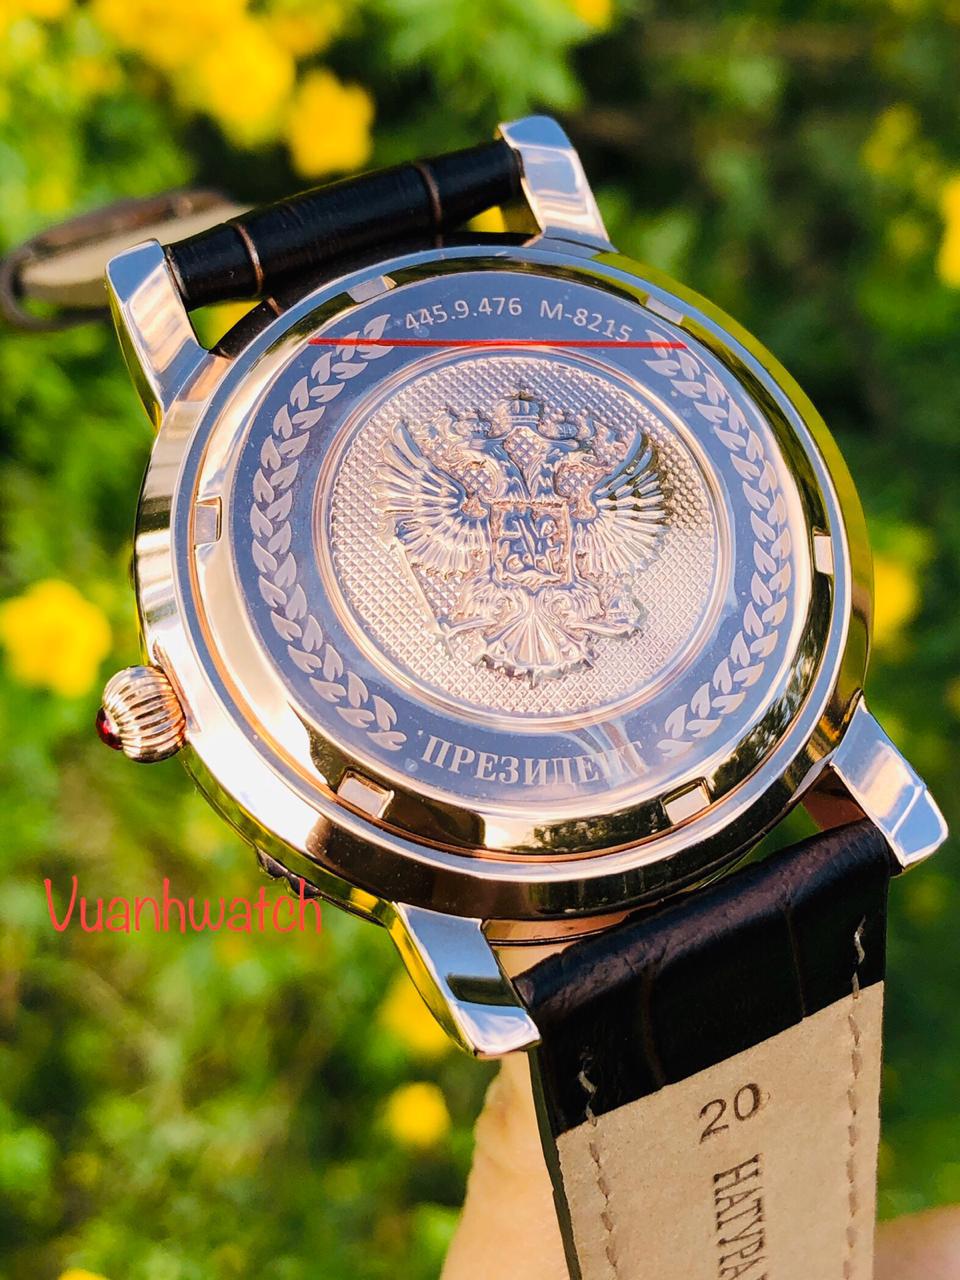 Đồng hồ Tổng thống Nga President 4459476